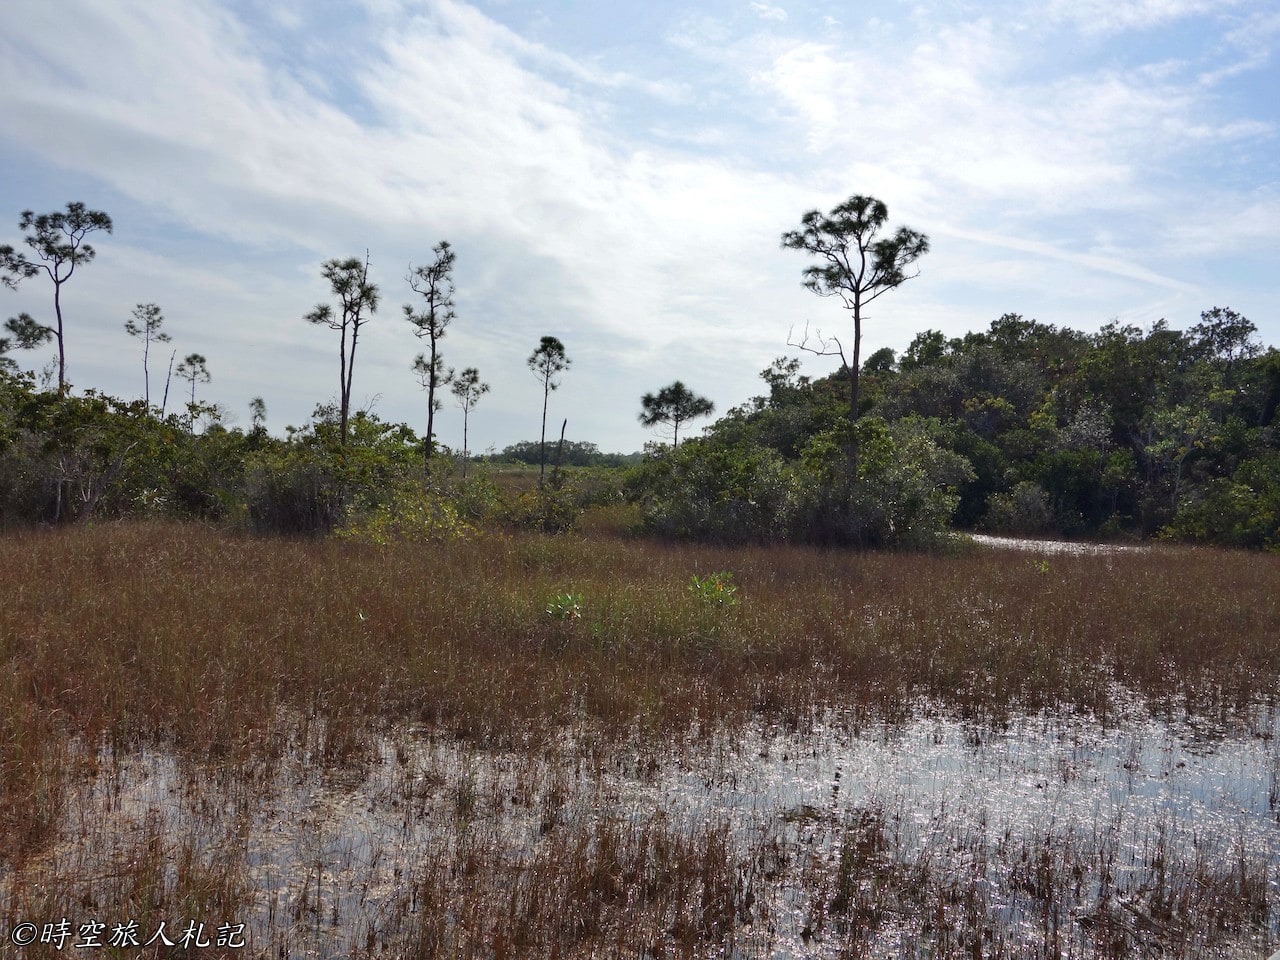 Everglades national park,大沼澤地國家公園 13